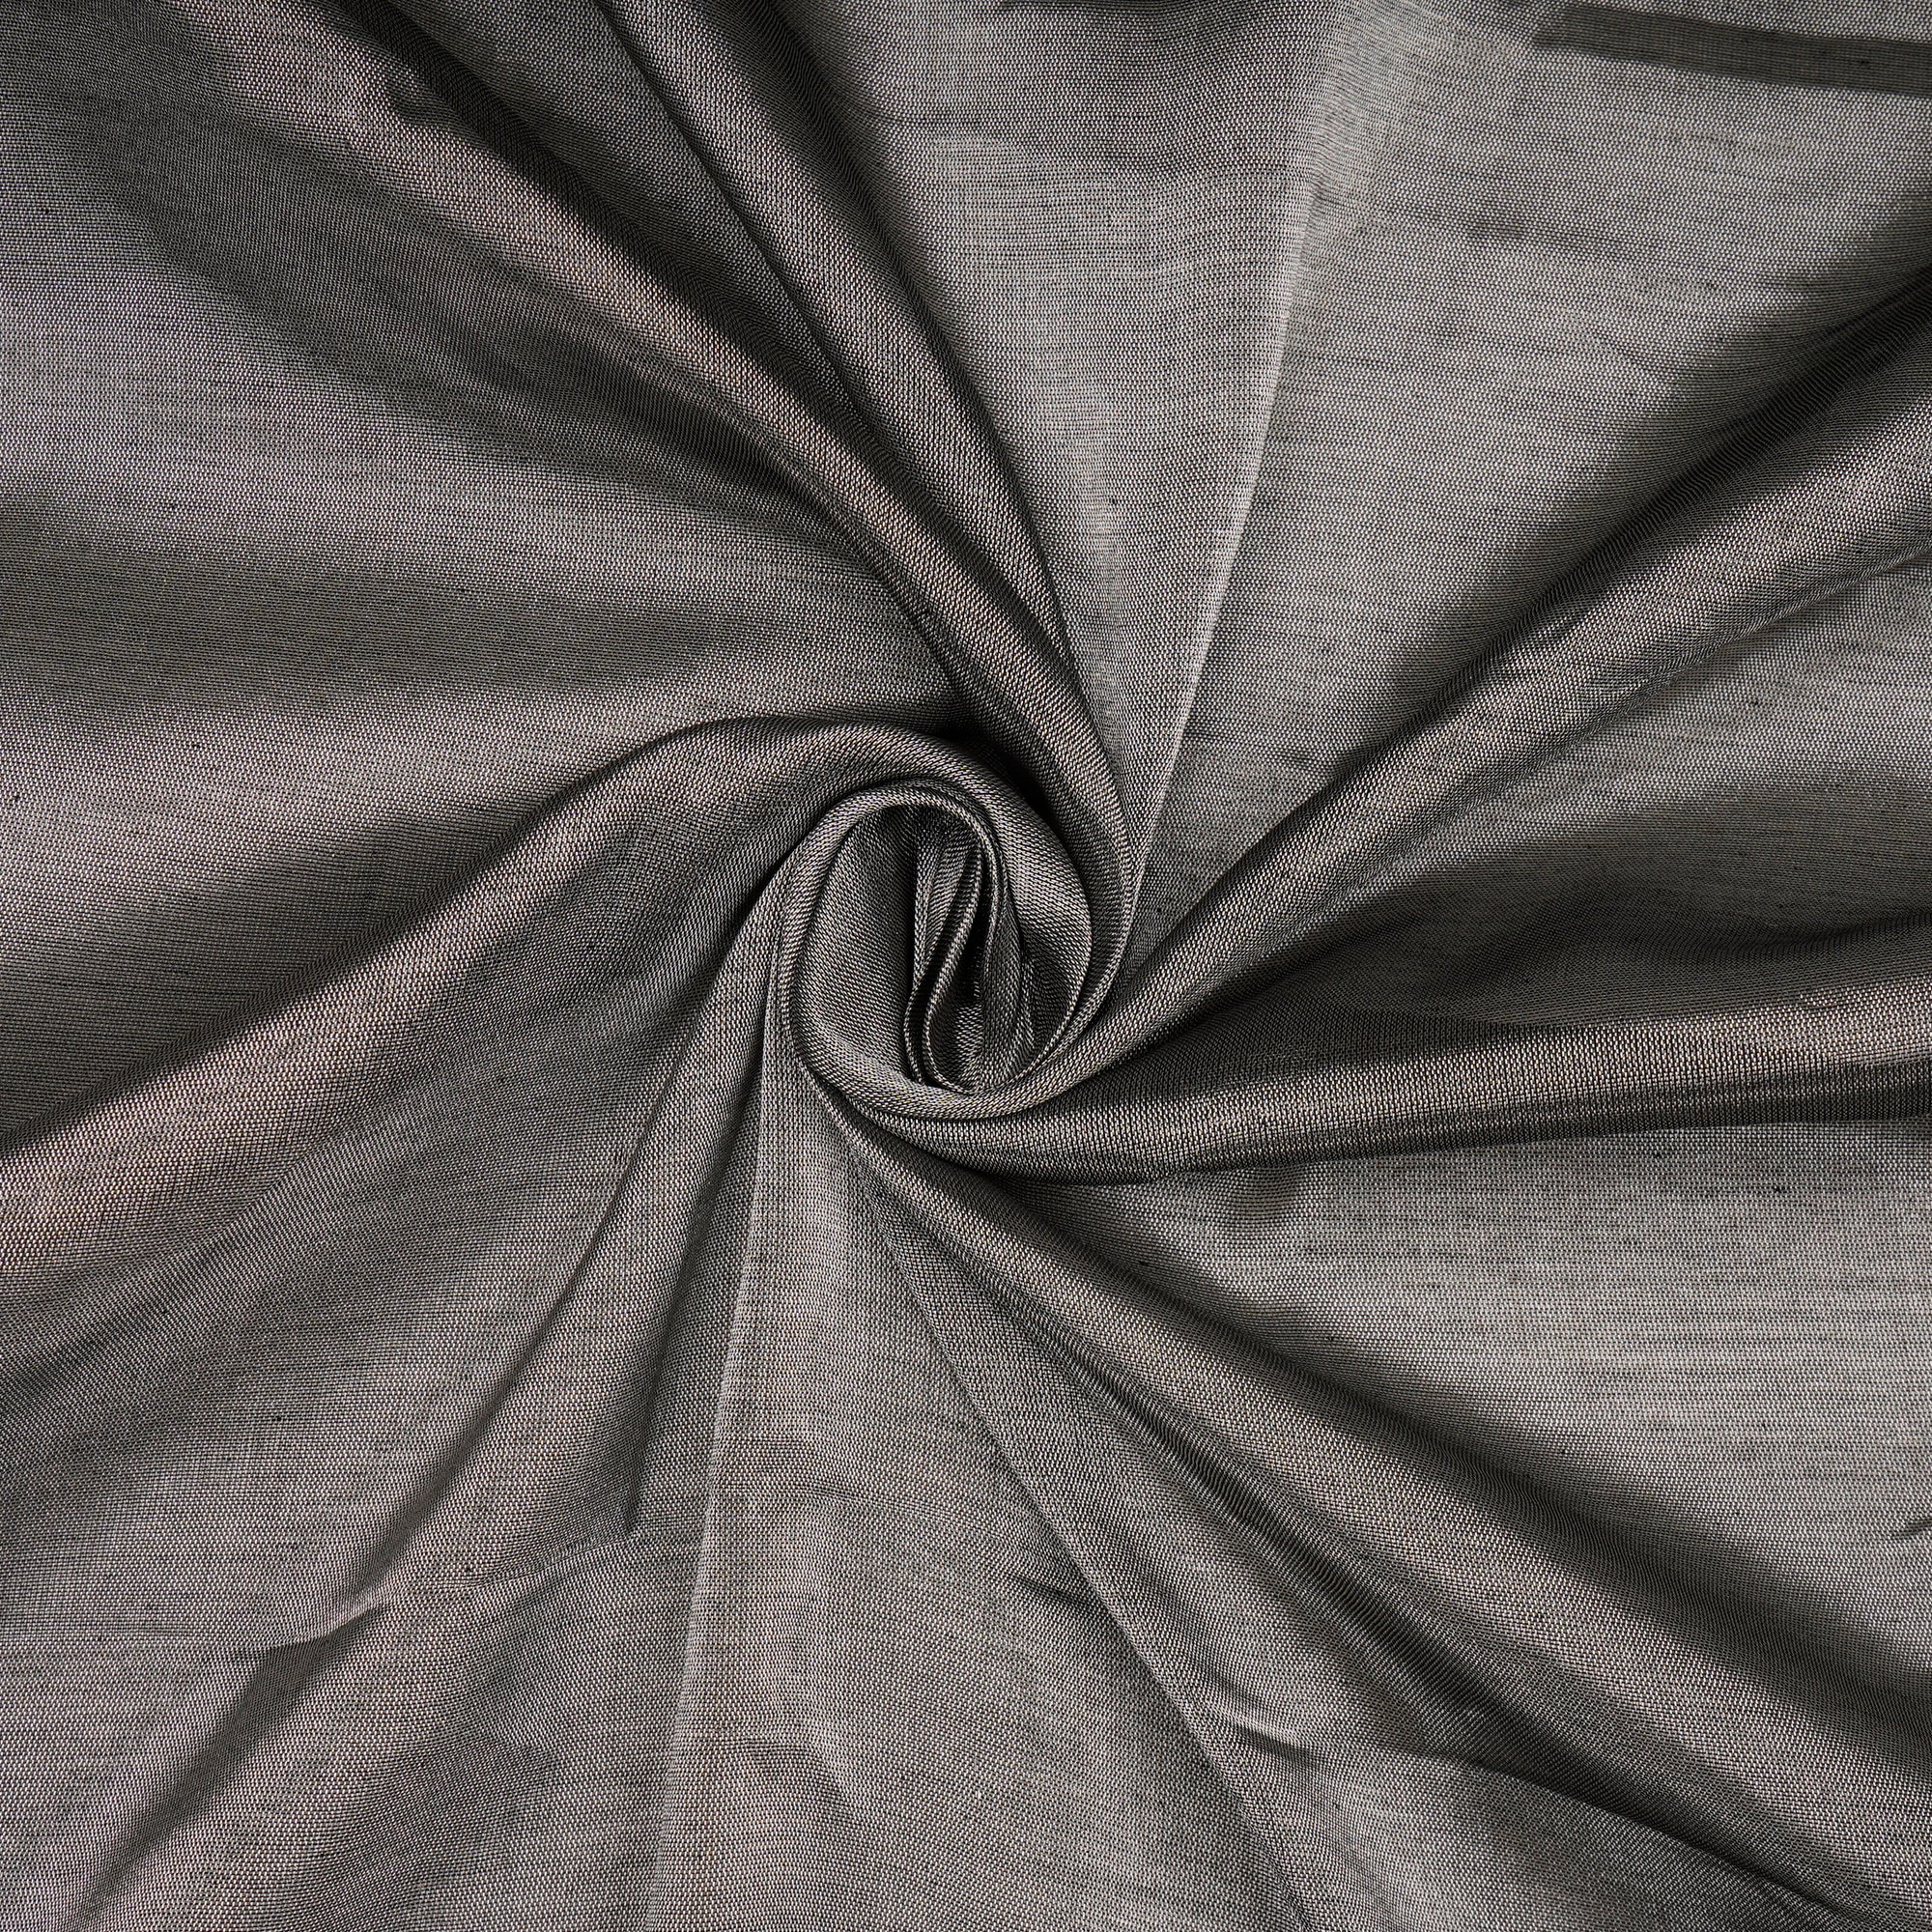 Metallic Silver Color Handwoven Heavy Pure Tissue Fabric